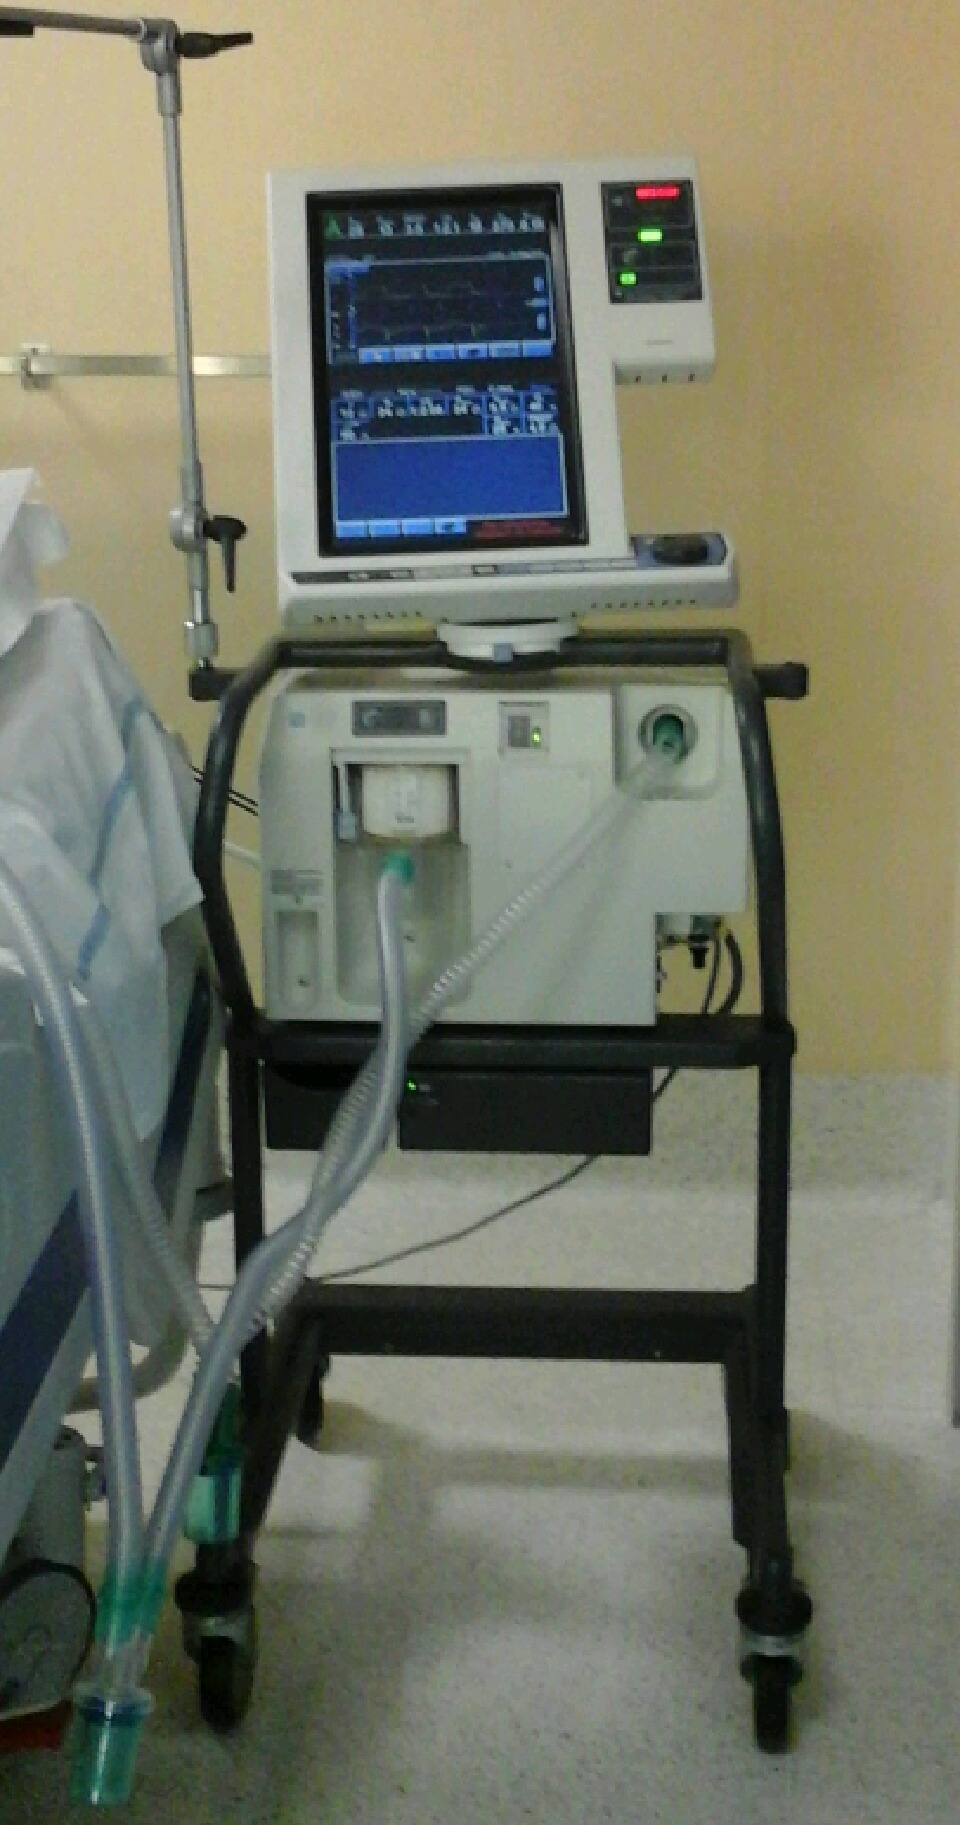 خریداری و اهداء یک دستگاه تنفس مصنوعی به بیمارستان واسعی سبزوار